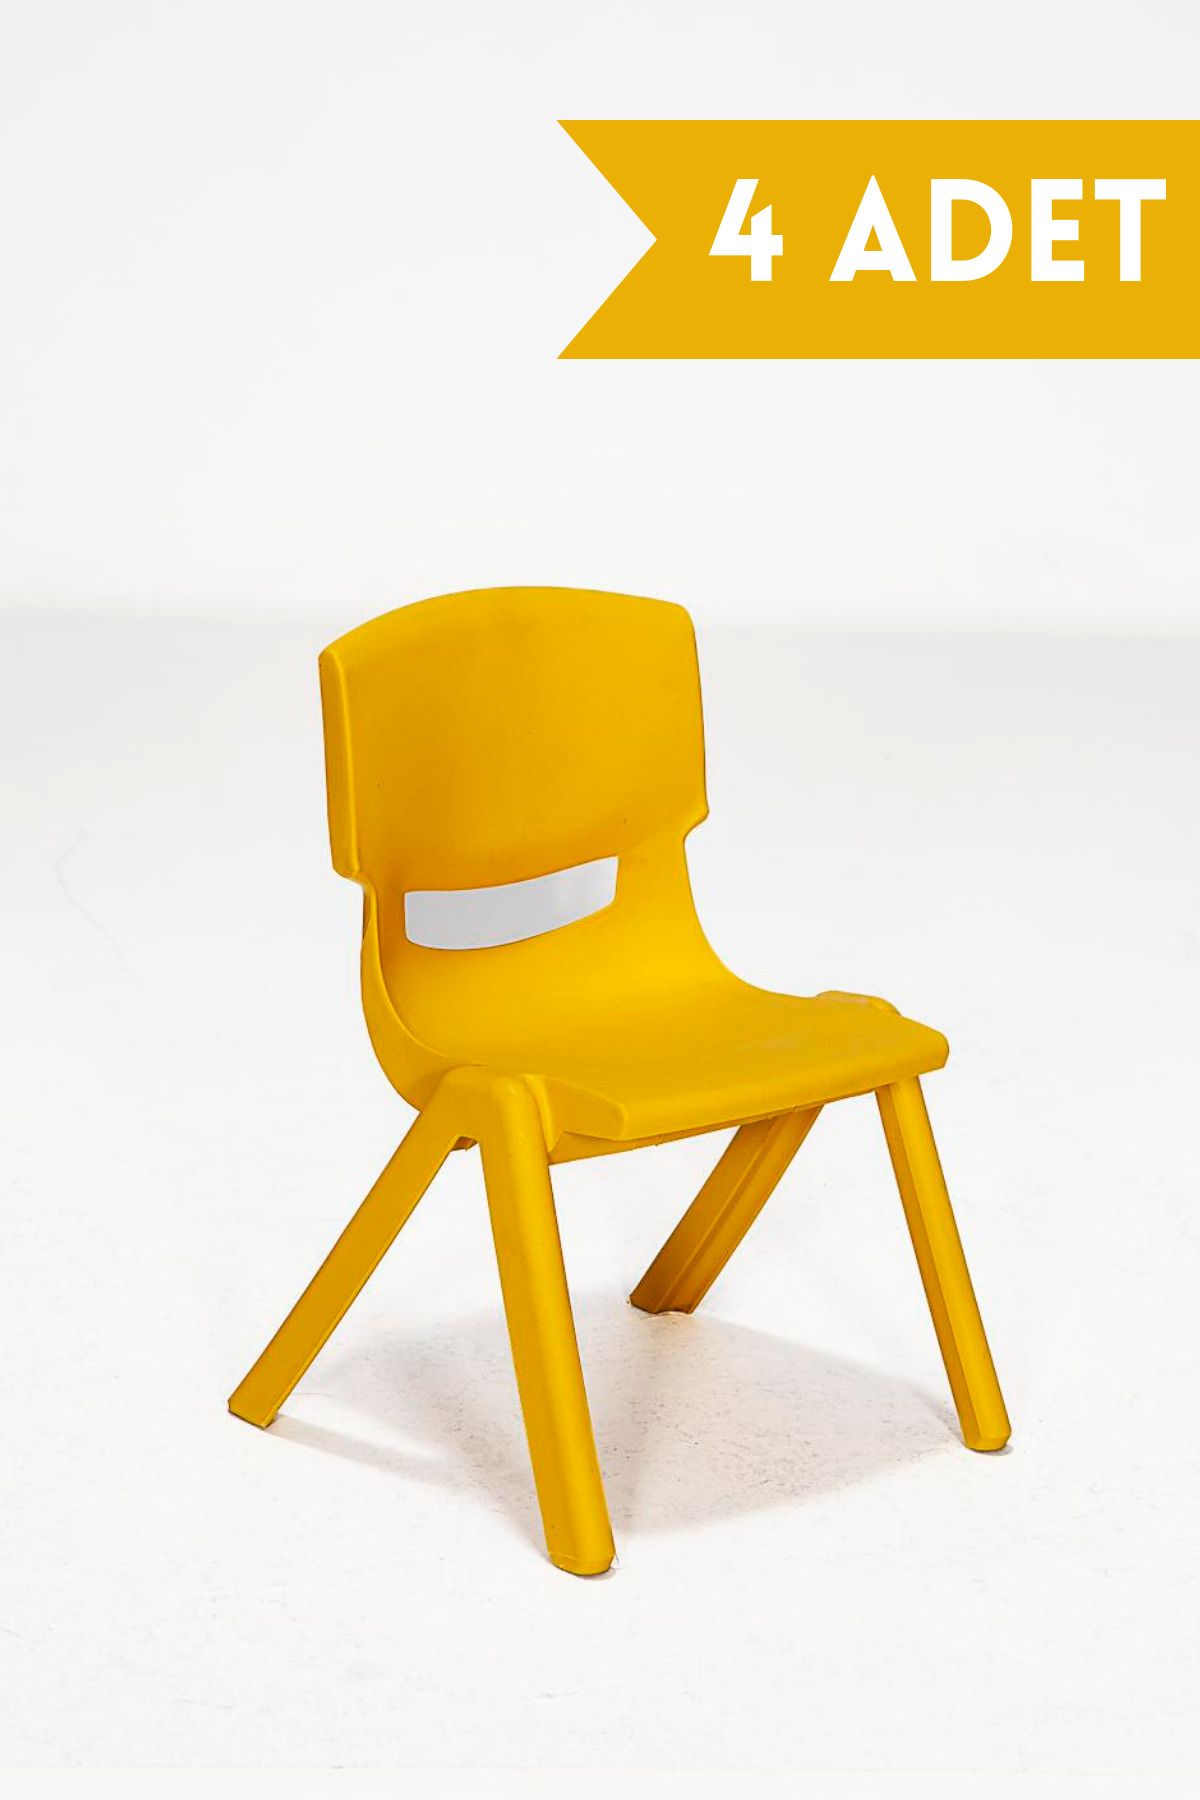 MOBETTO 4 Adet Kreş Anaokulu Çocuk Sandalyesi Sert Plastik- Sarı